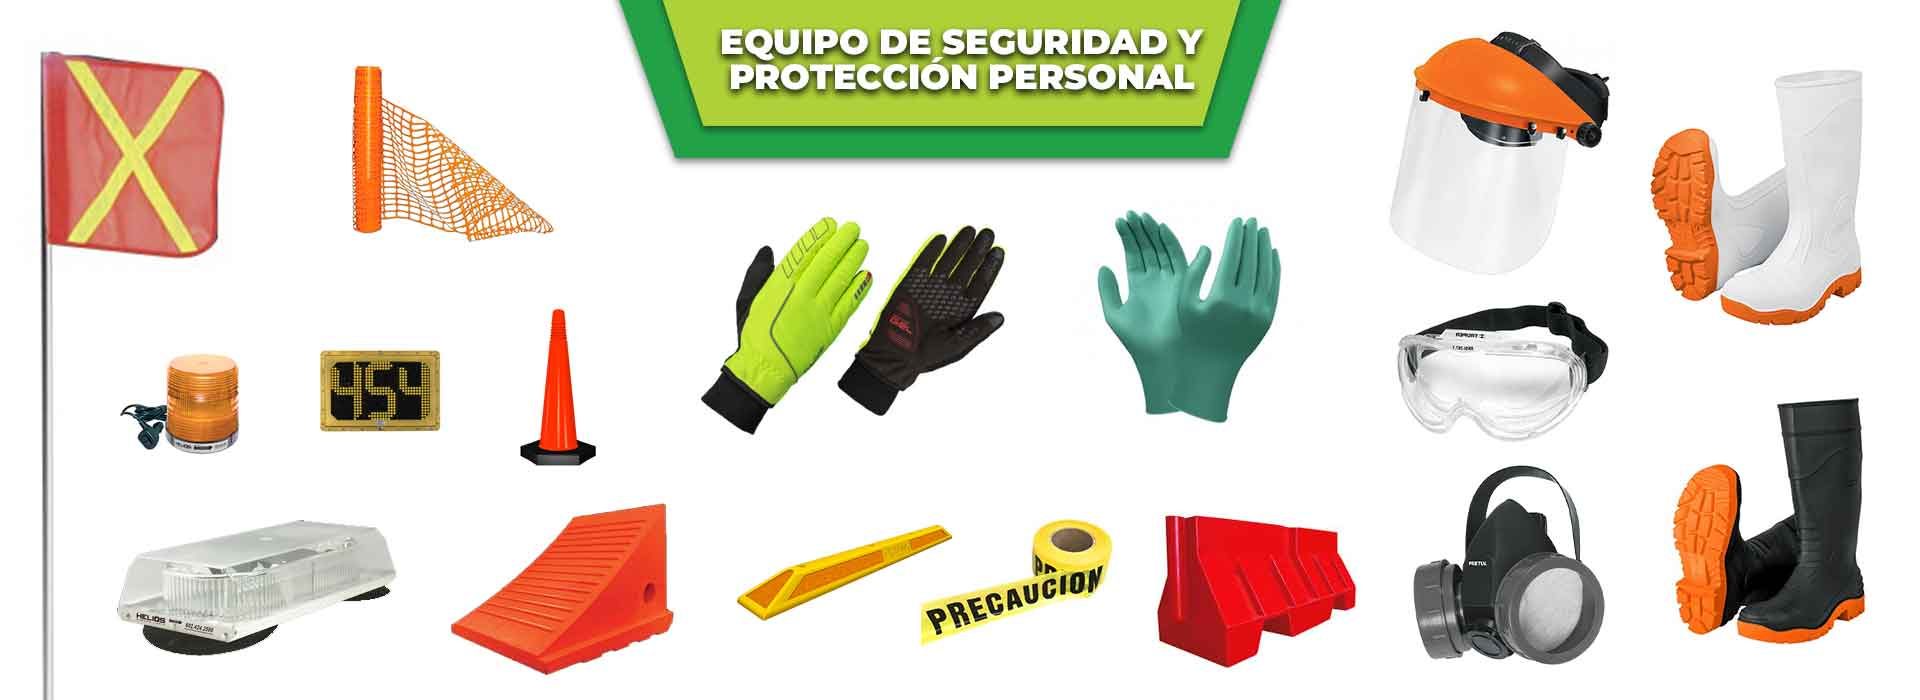 productos-seguridad-proteccion-personal